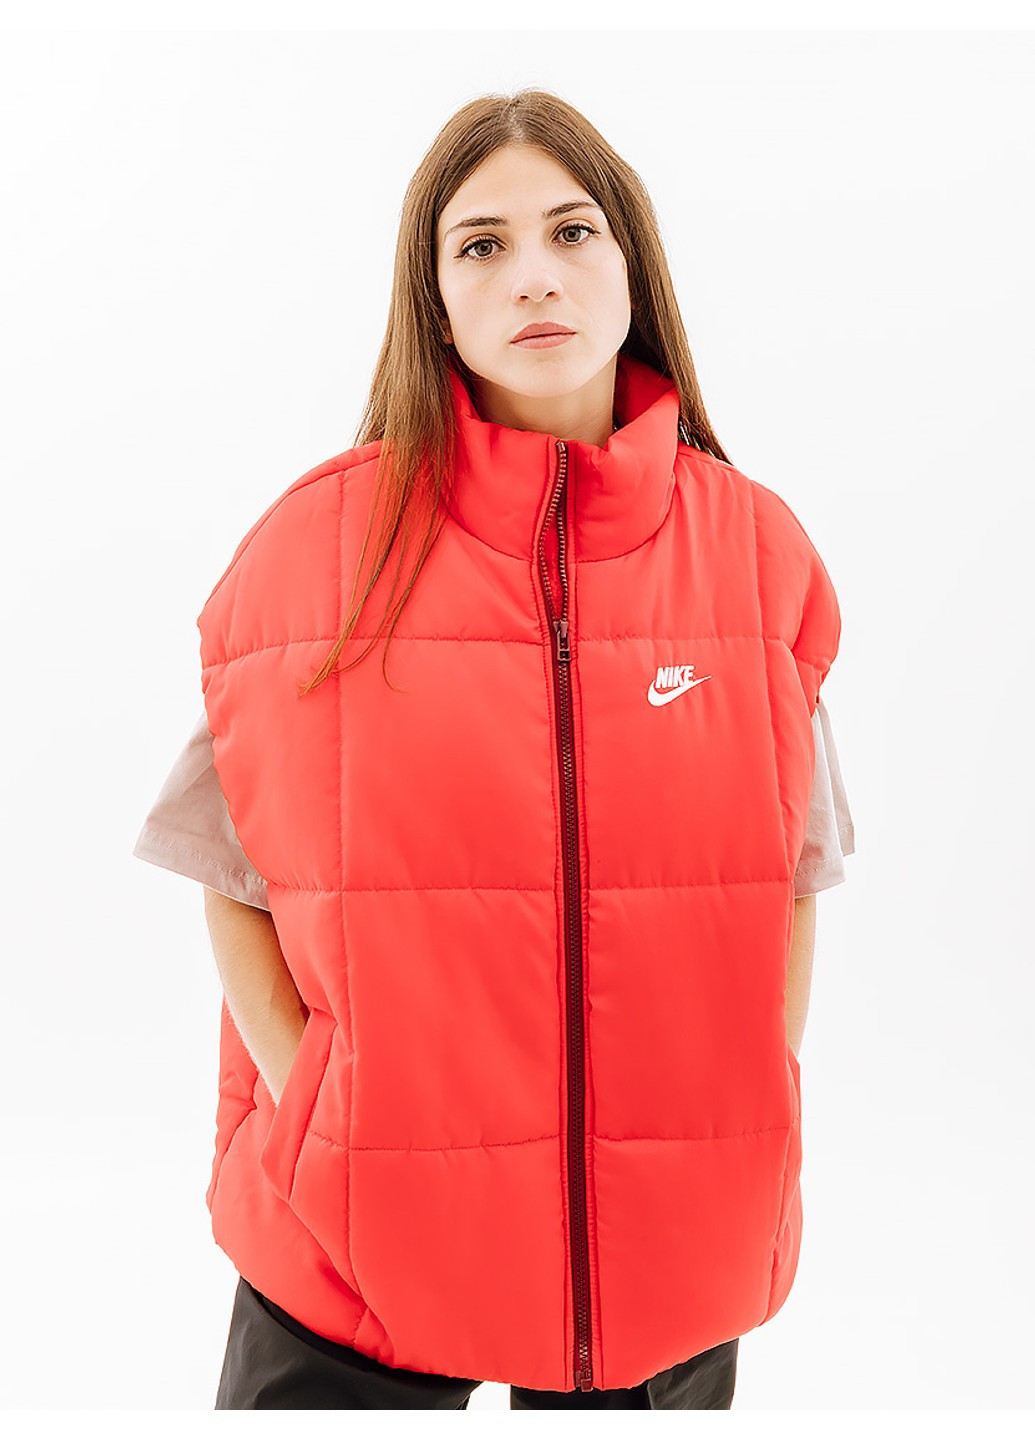 Червона демісезонна жилетка clsc vest Nike